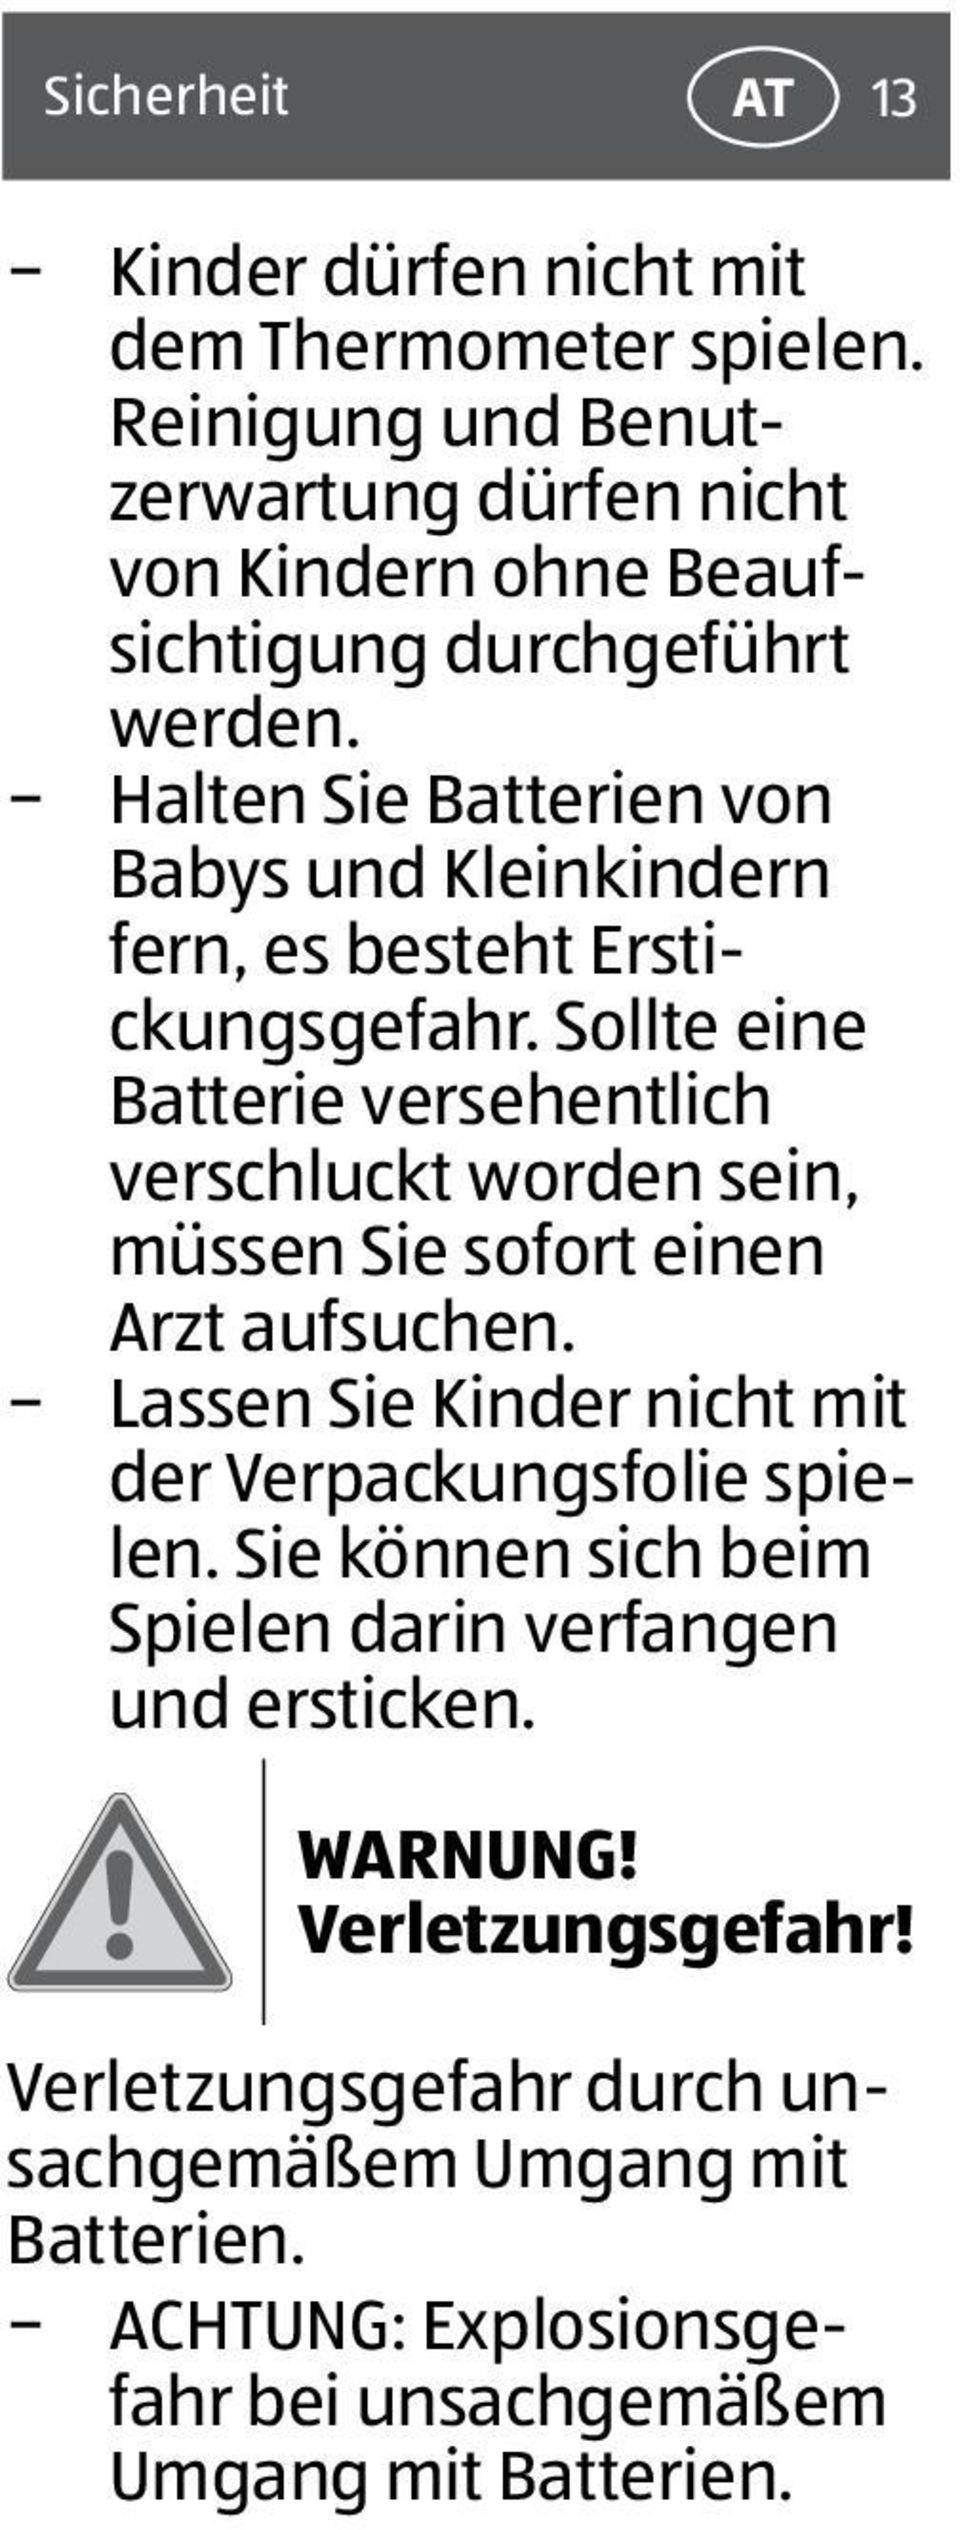 Halten Sie Batterien von Babys und Kleinkindern fern, es besteht Erstickungsgefahr.